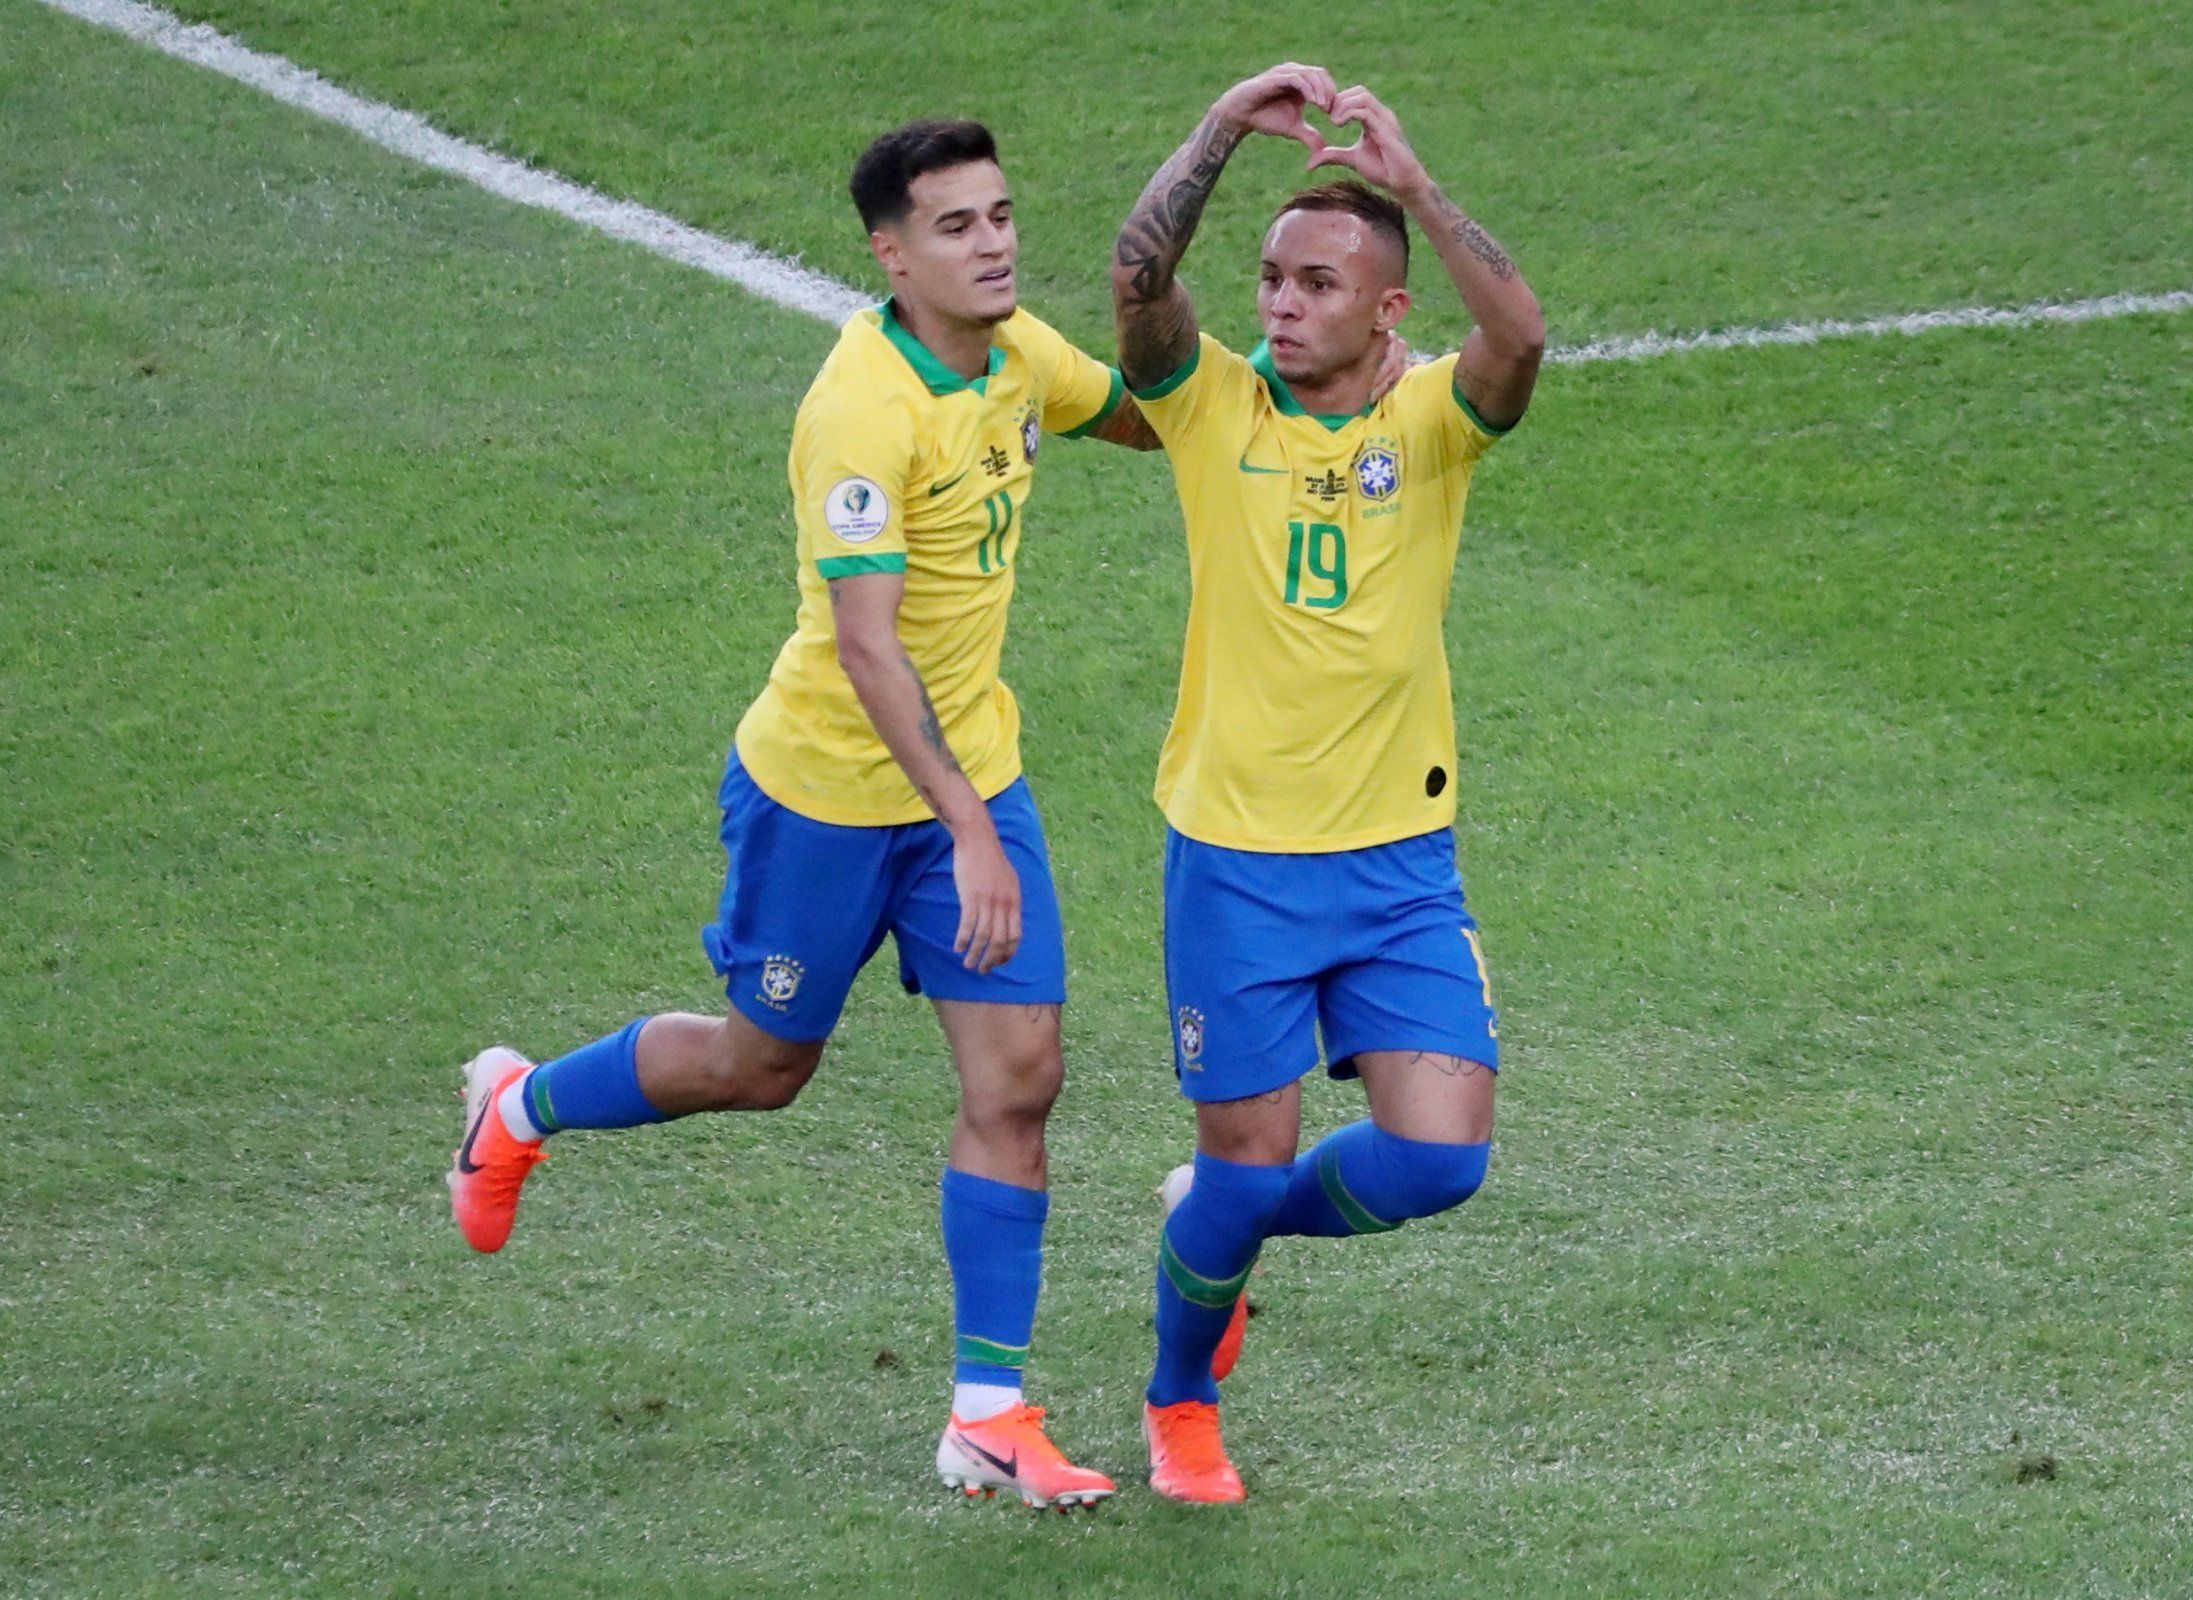 Everton celebrates scoring for Brazil